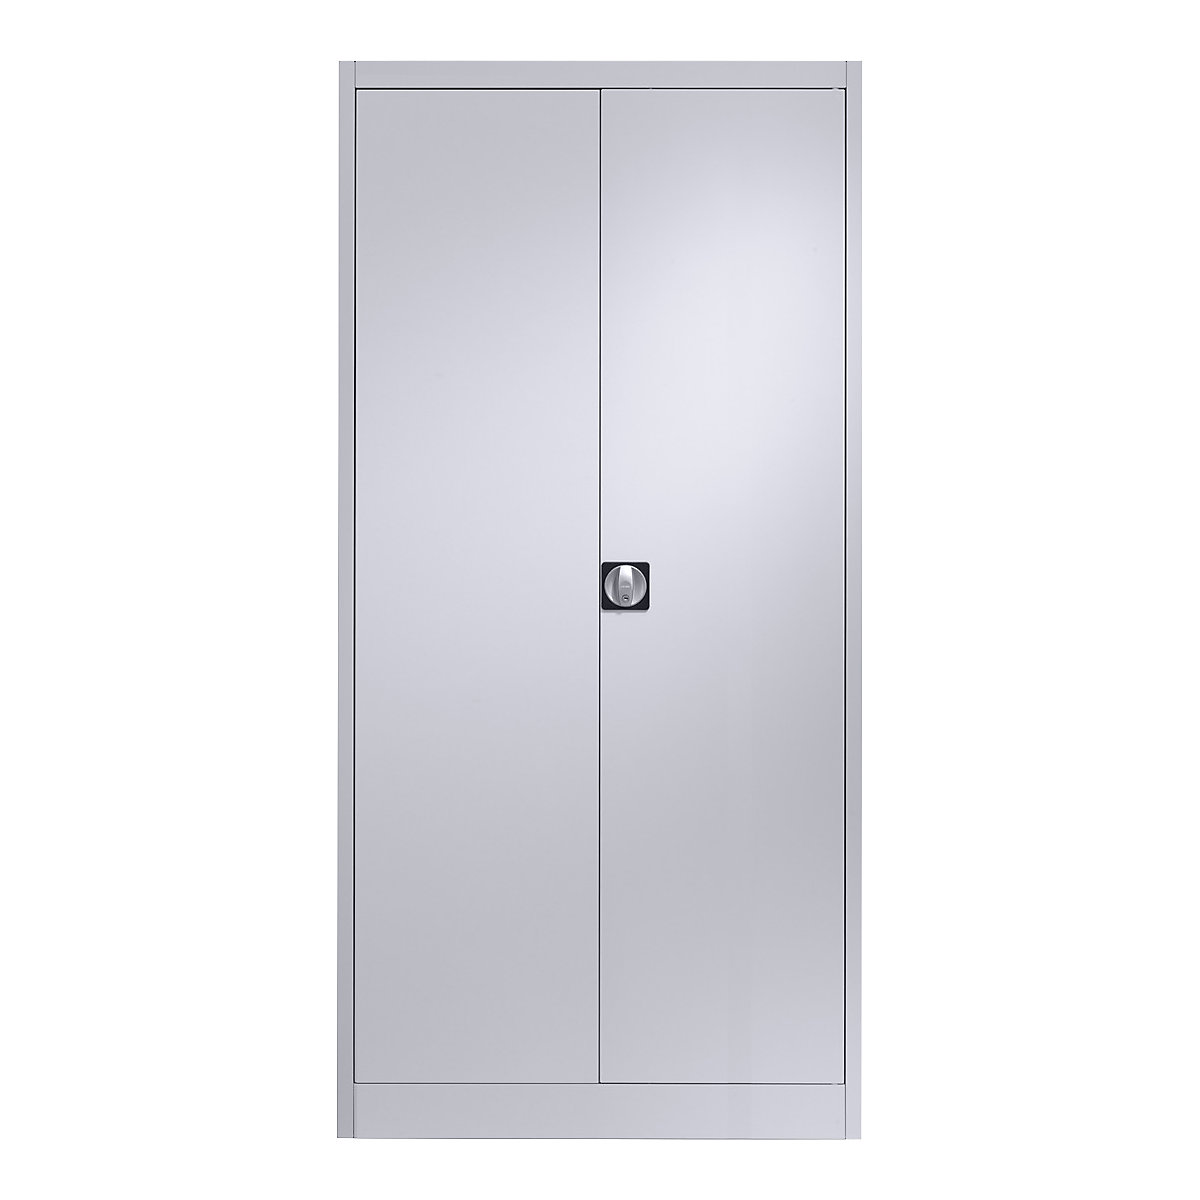 Oceľová skriňa s krídlovými dverami – mauser, 4 police, hĺbka 600 mm, strieborná-6